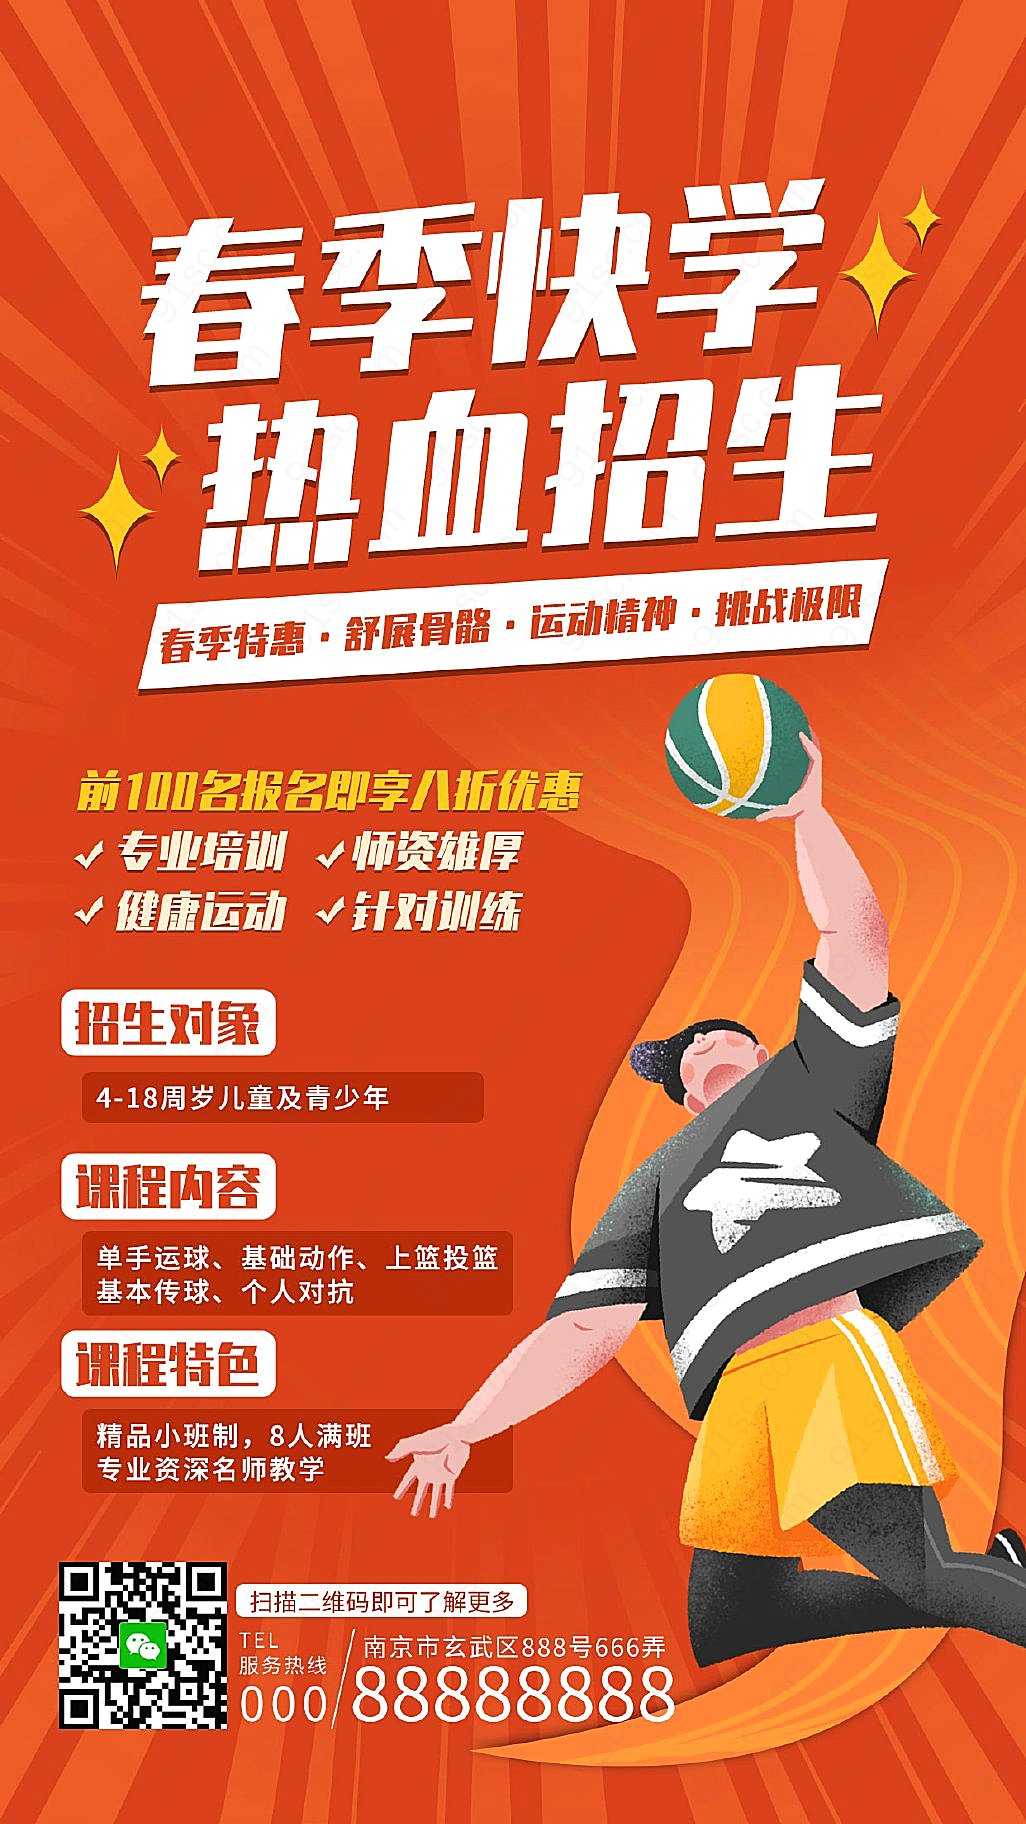 热爱篮球者的福音体育课程特别推出篮球训练手机海报手机营销图新媒体用图下载